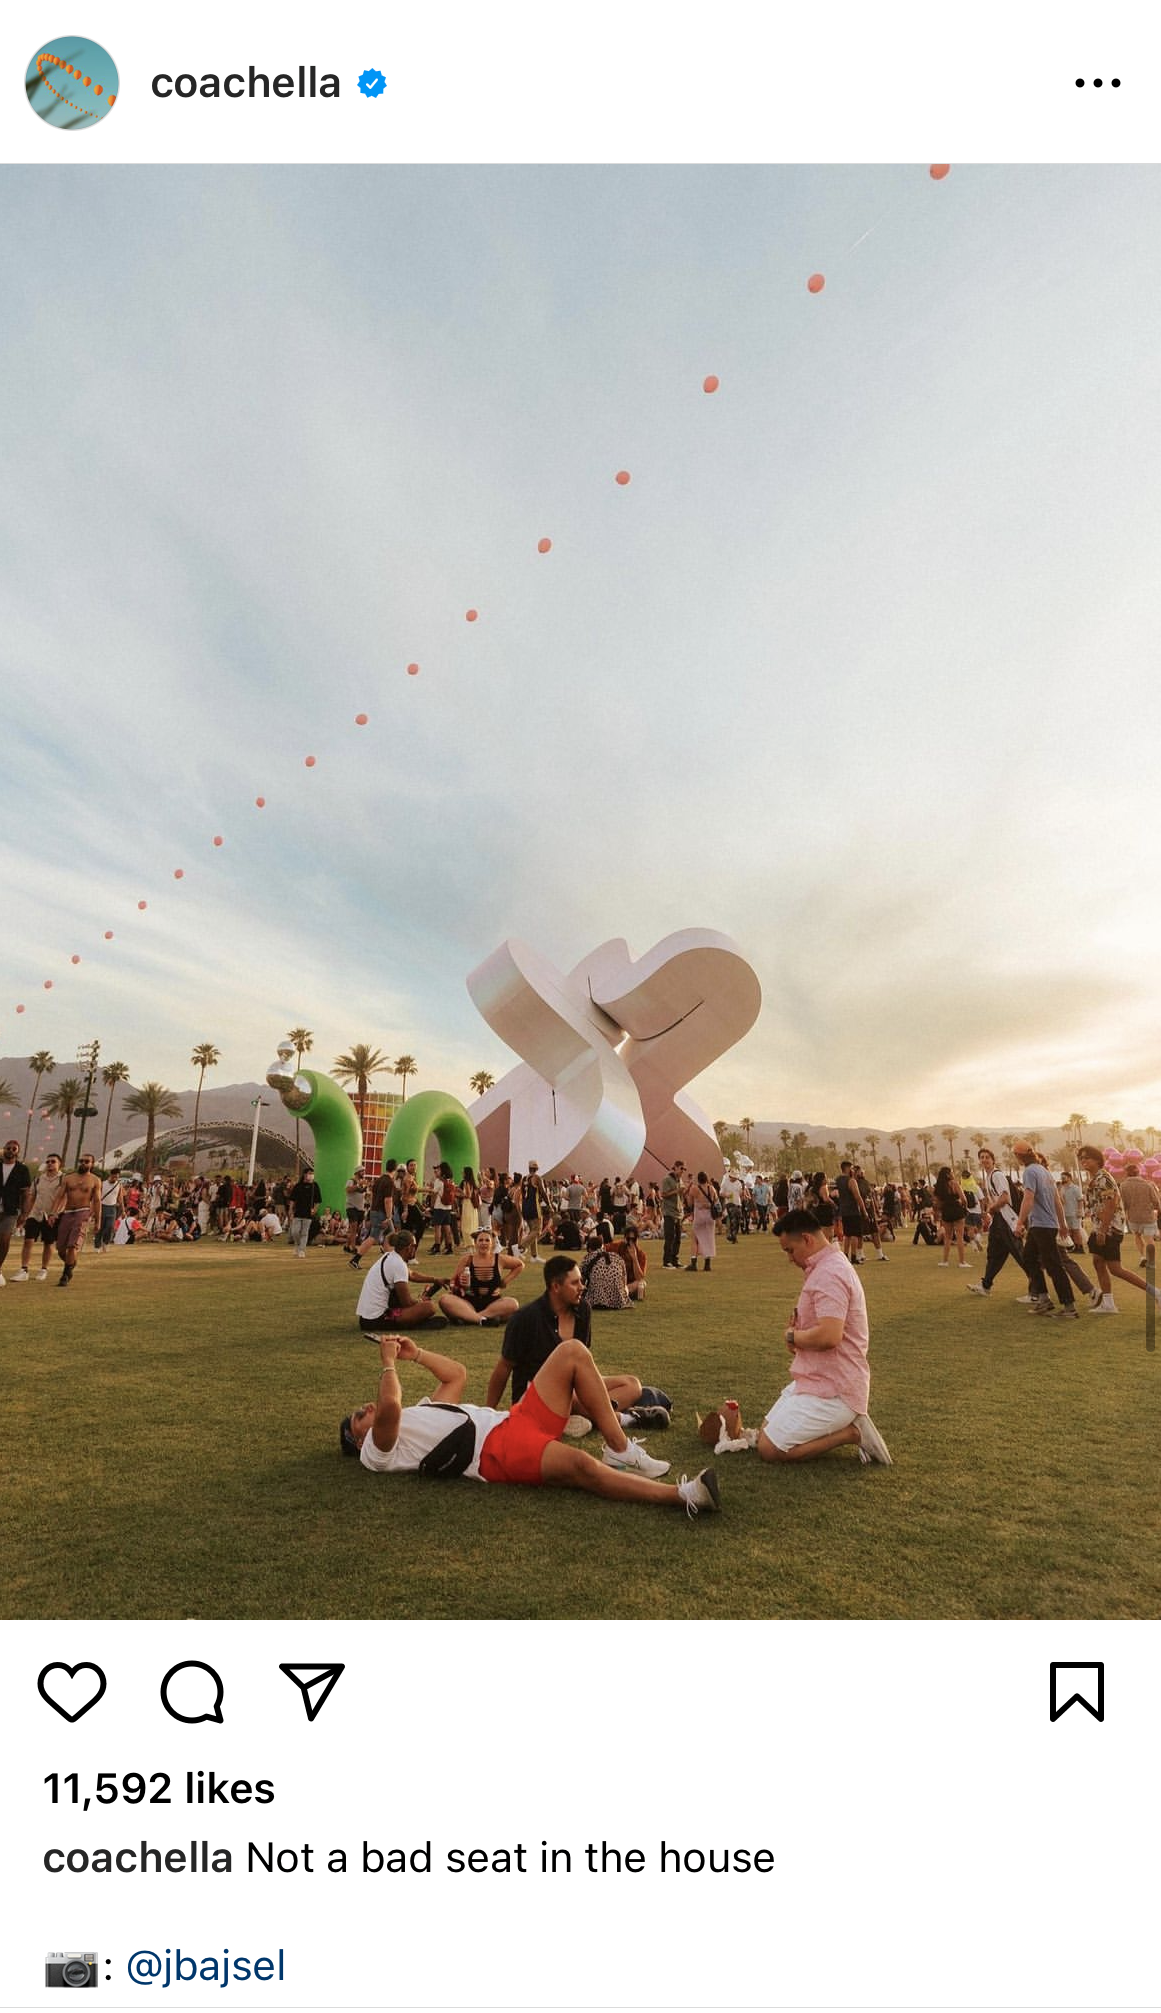 Captura de tela da conta de Instagram do Coachella com uma foto de participantes do festival relaxando na grama. A legenda diz: “Not a bad seat in the house”.